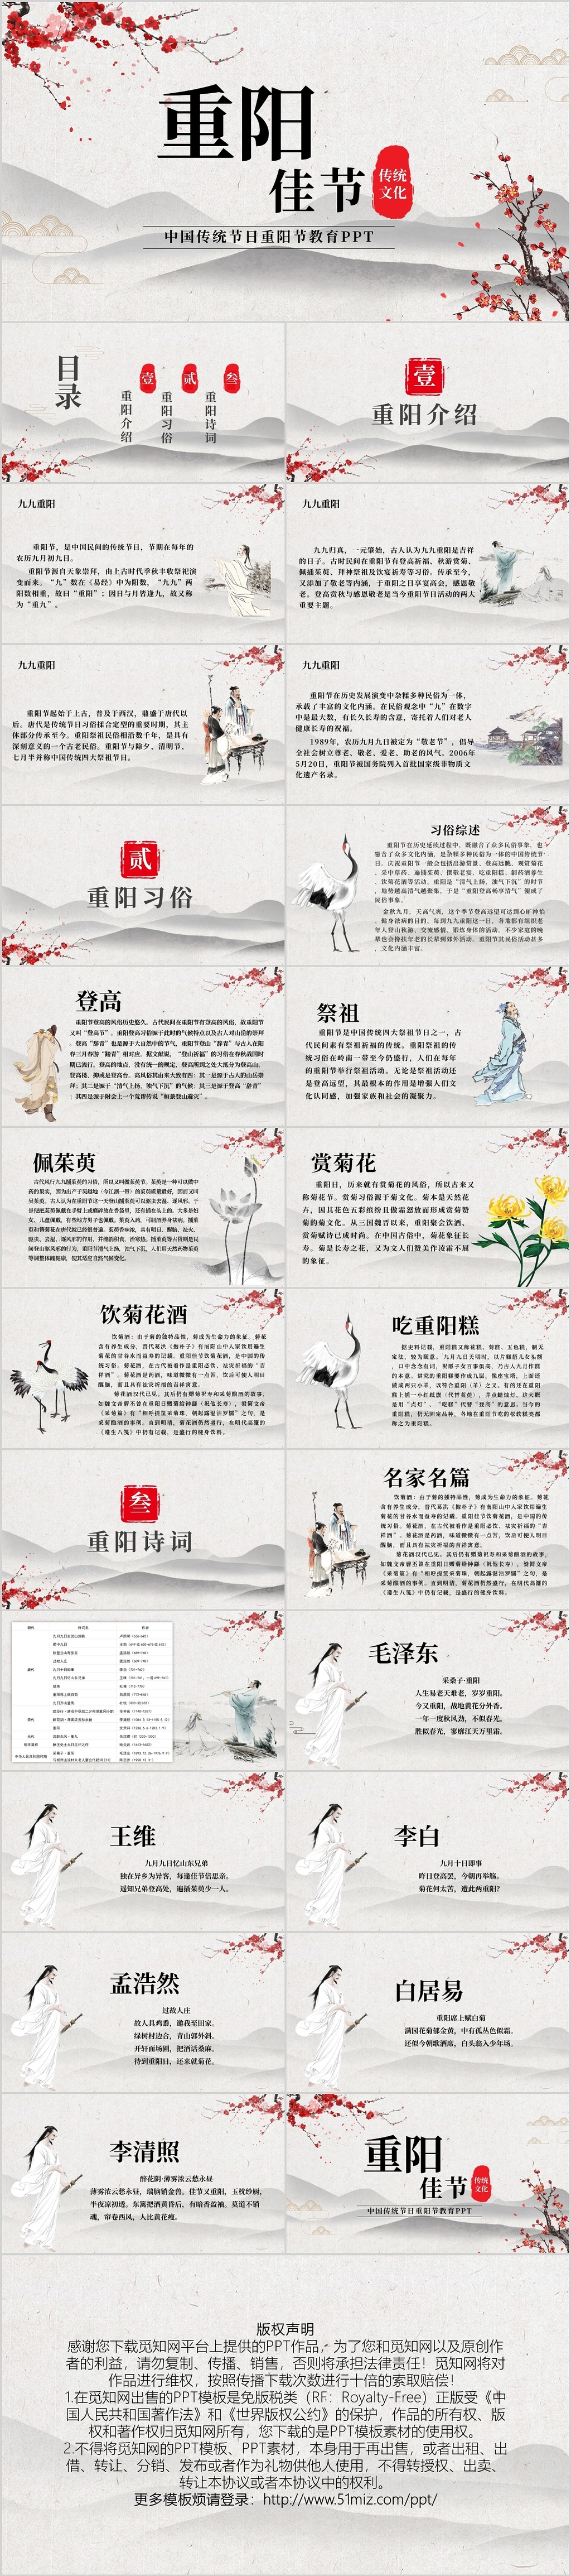 中国传统节日重阳节教育PPT模板PPT宣传PPT动态PPT